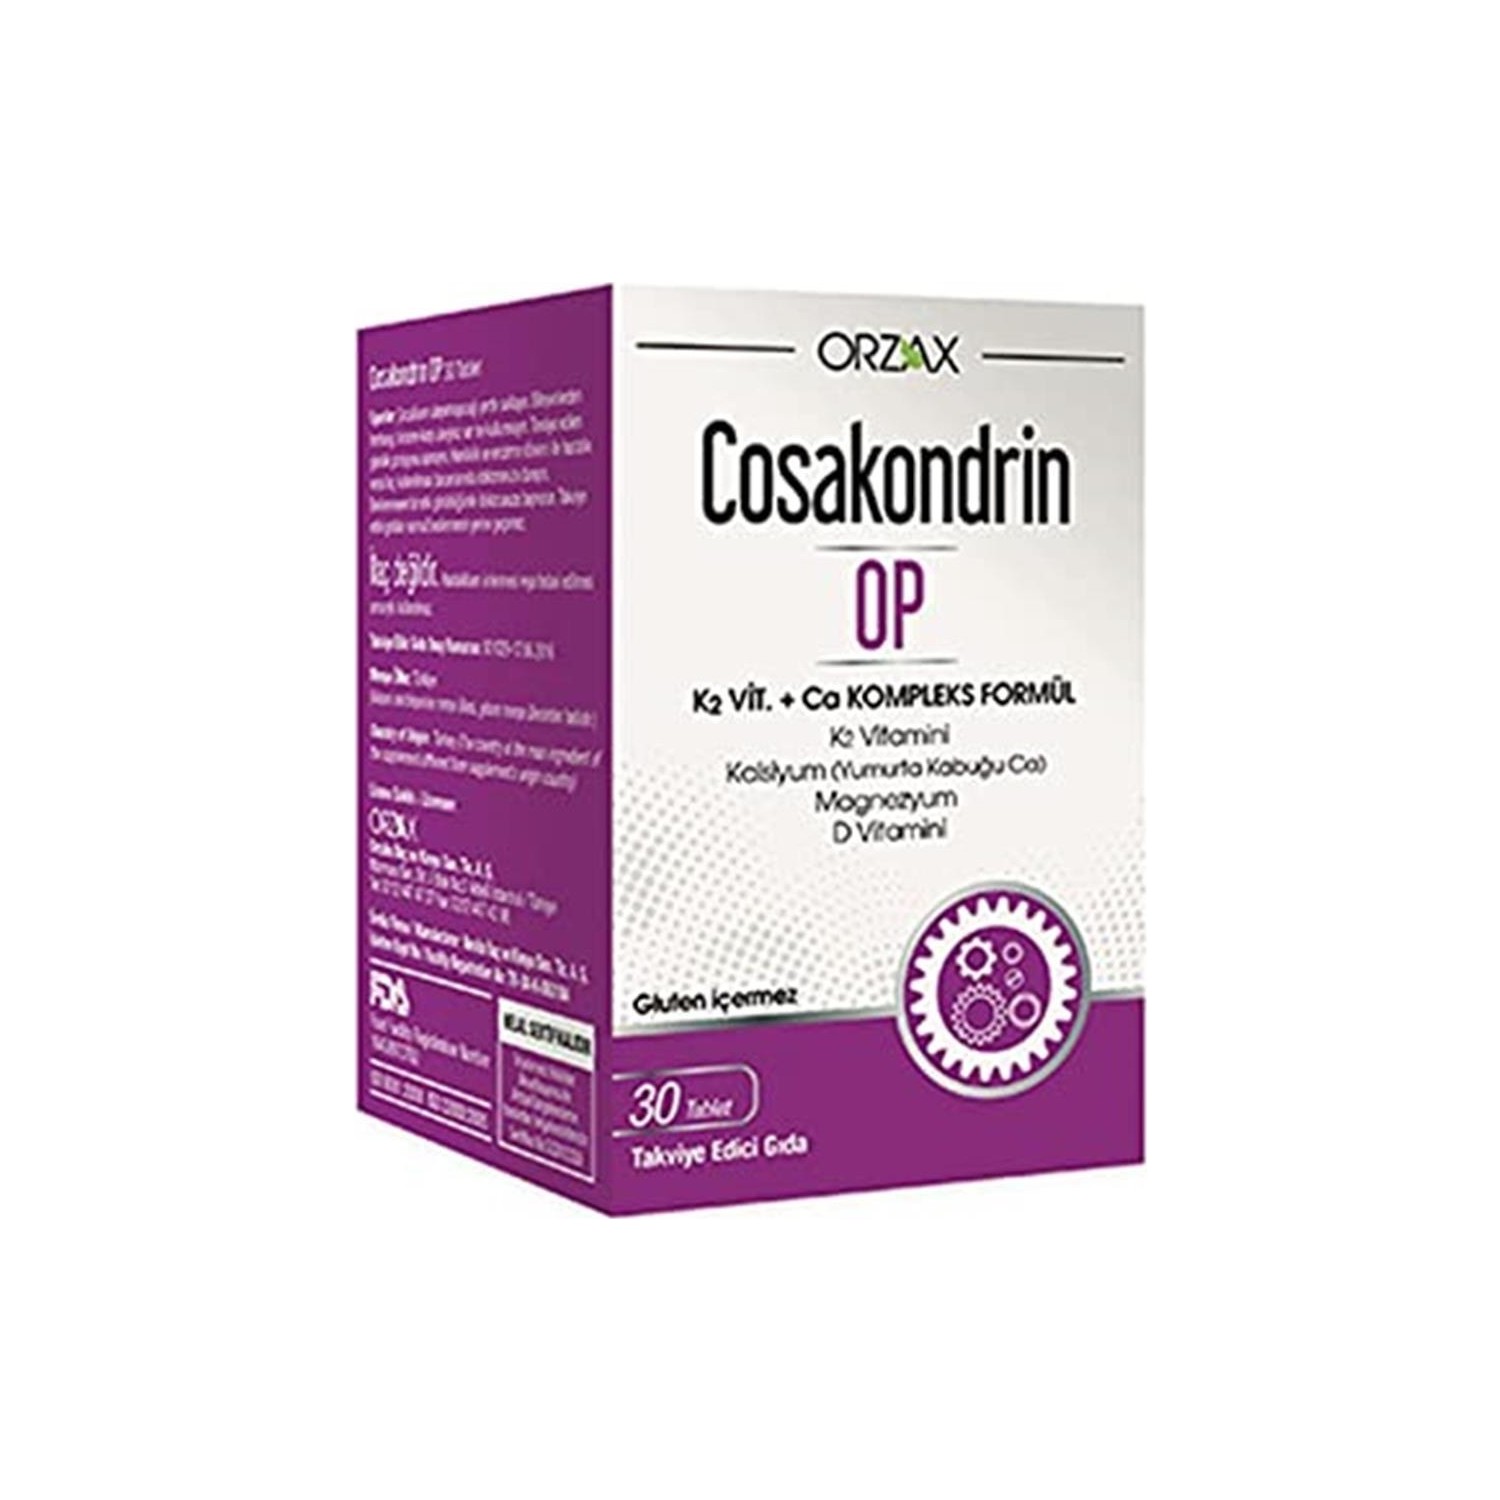 Пищевая добавка Orzax Cosakondrin Op, 30 таблеток цена и фото